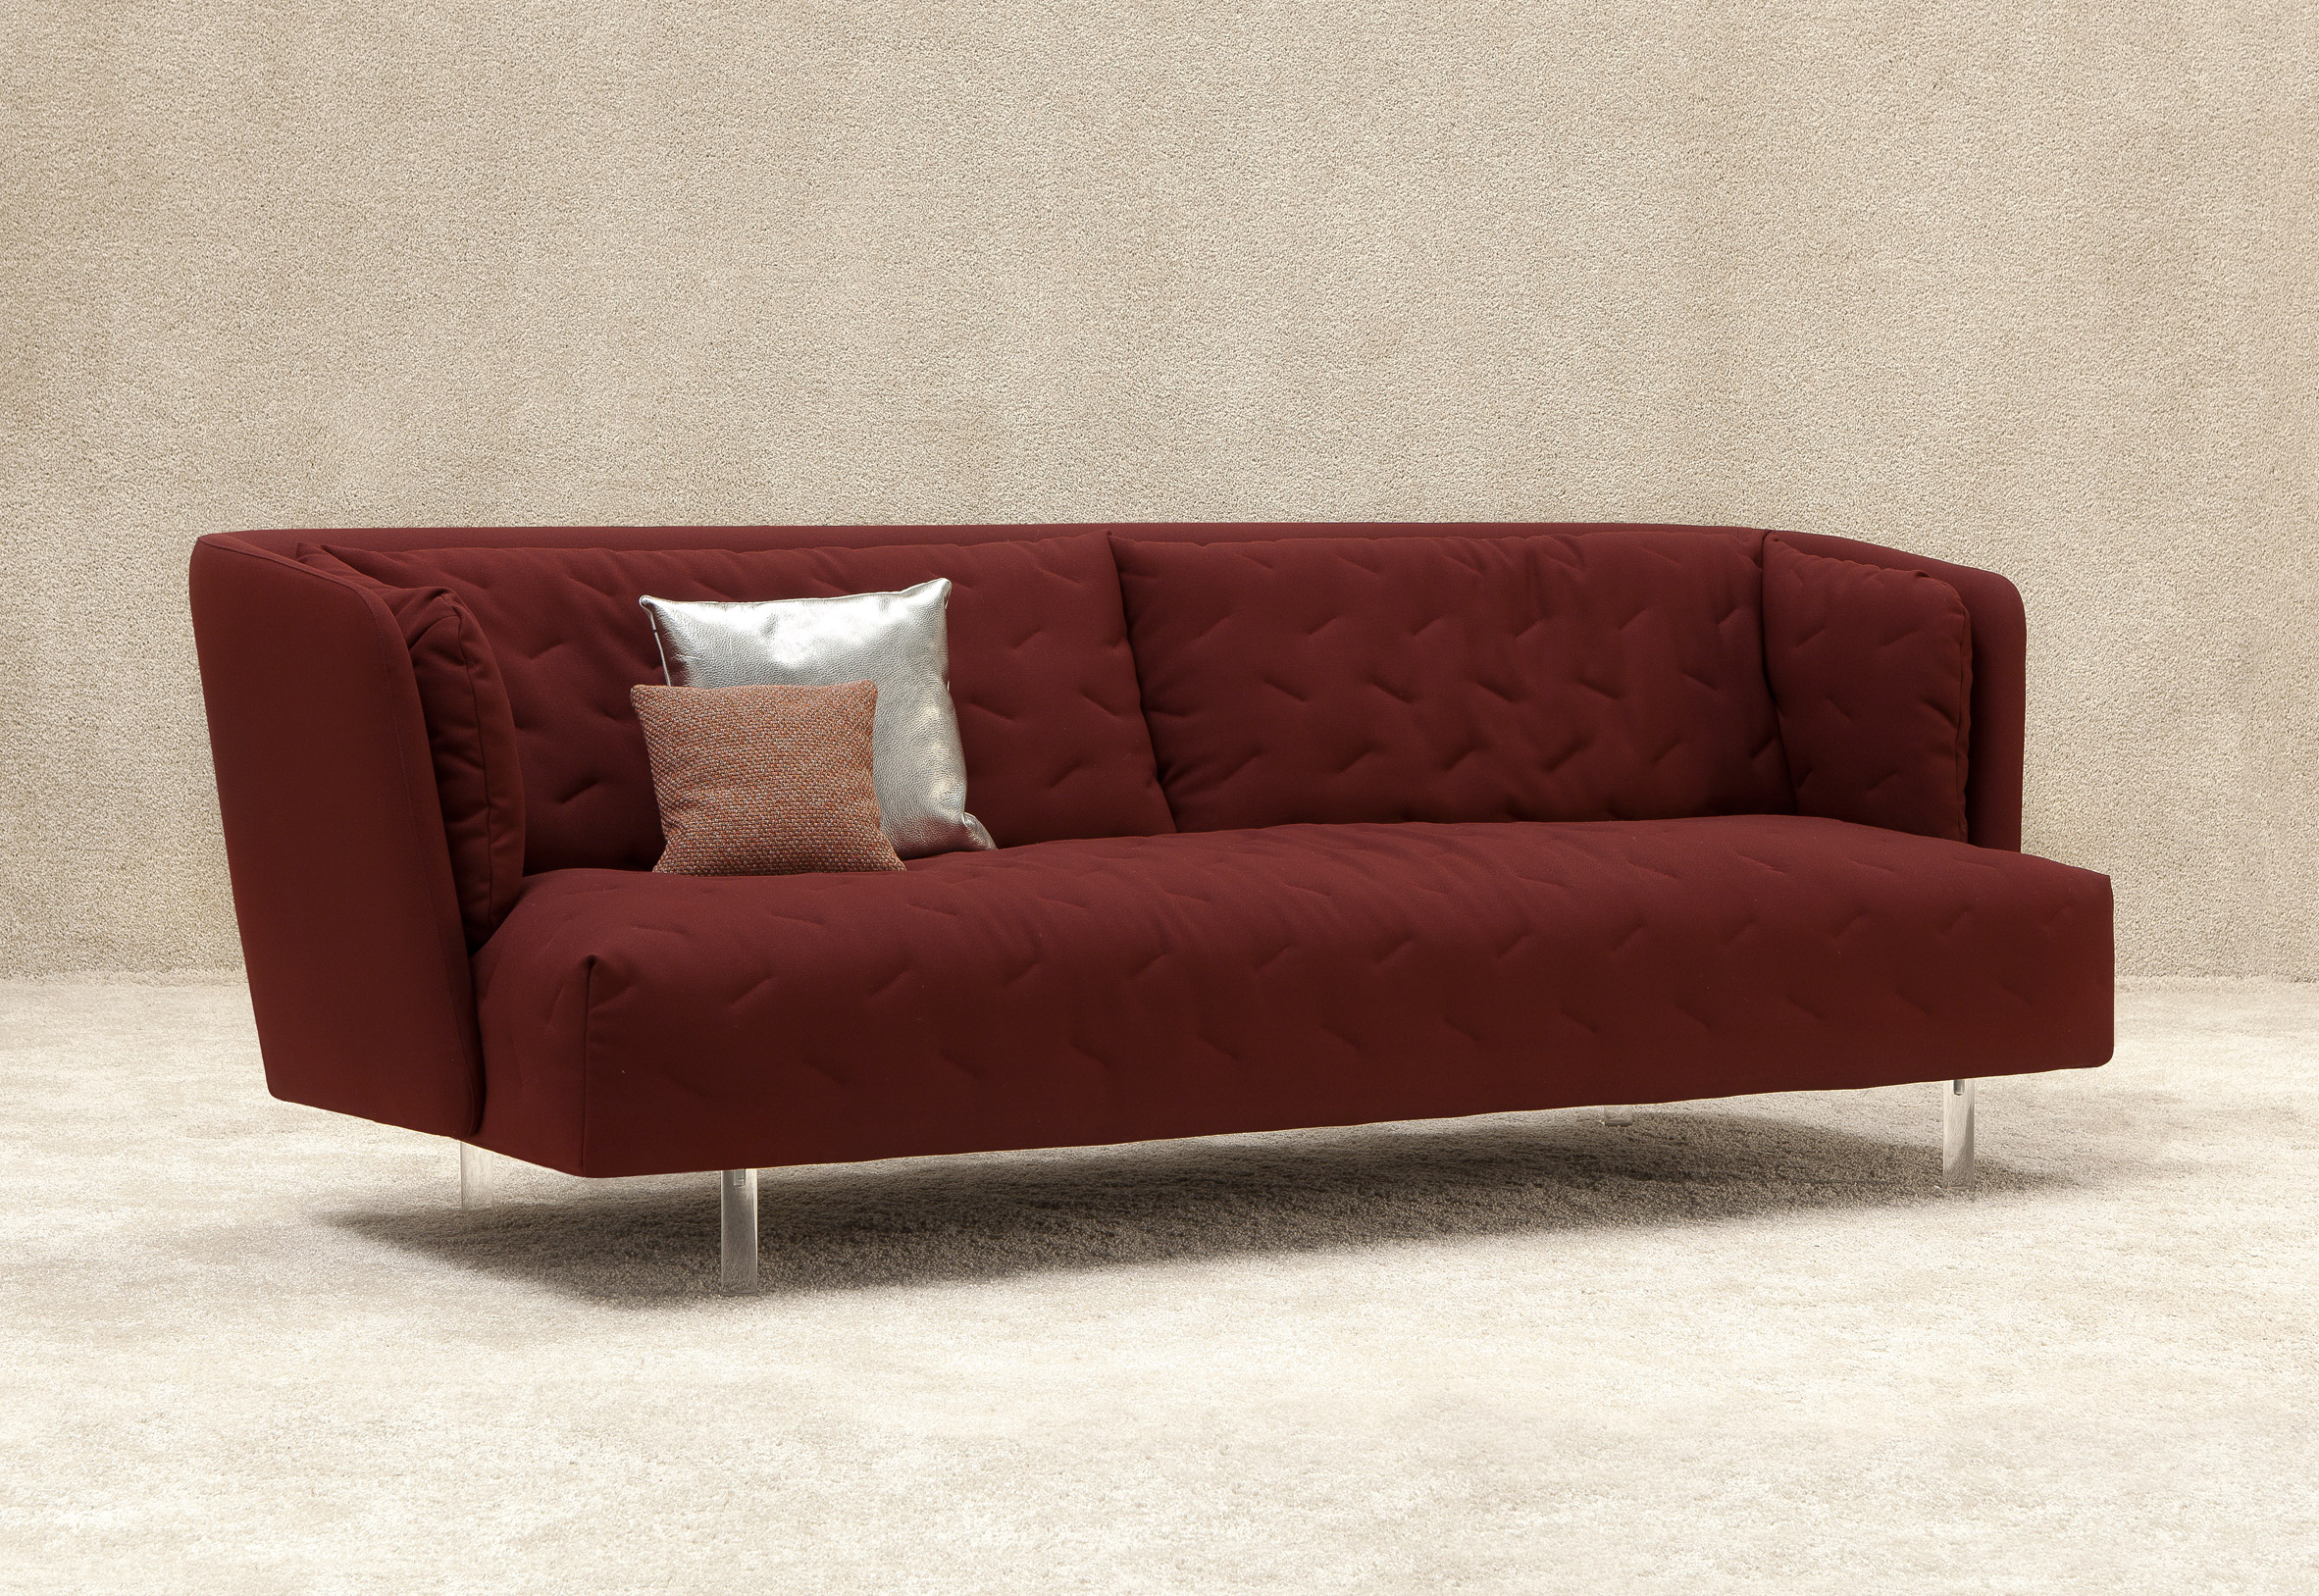 Obi sofa by Sancal